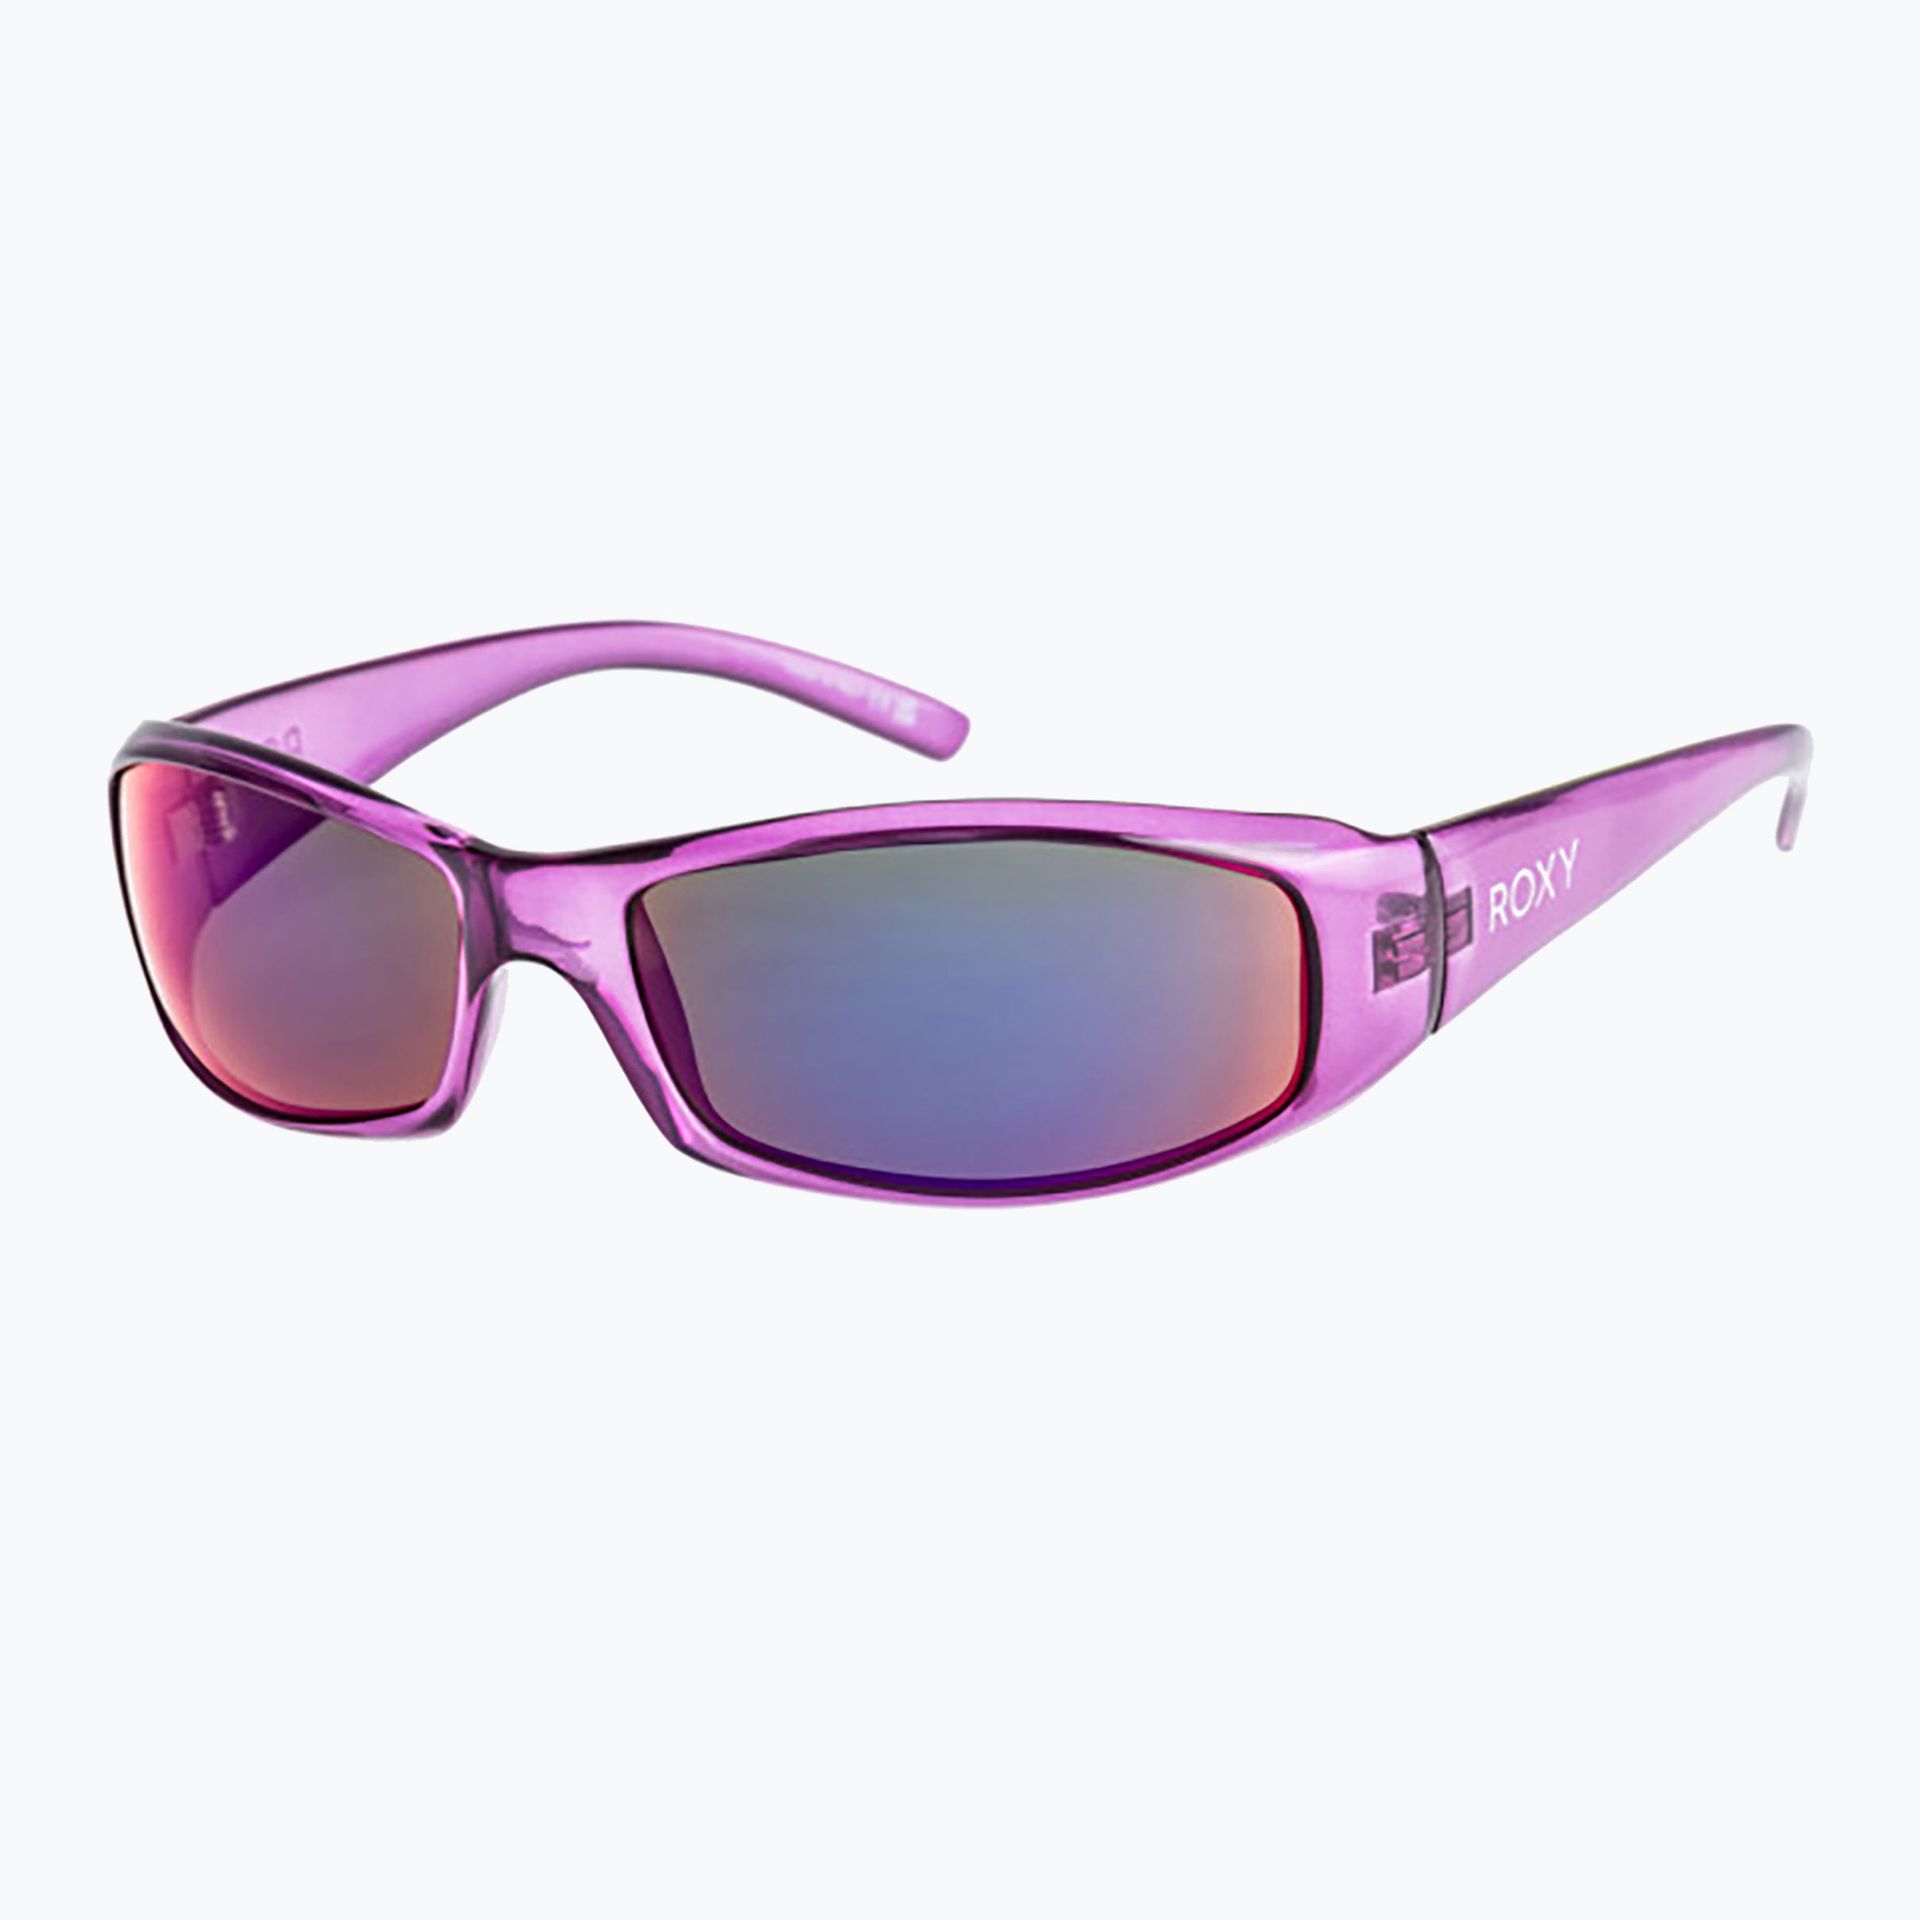 Okulary przeciwsłoneczne damskie Roxy Donna lilac/ml infra red | WYSYŁKA W 24H | 30 DNI NA ZWROT